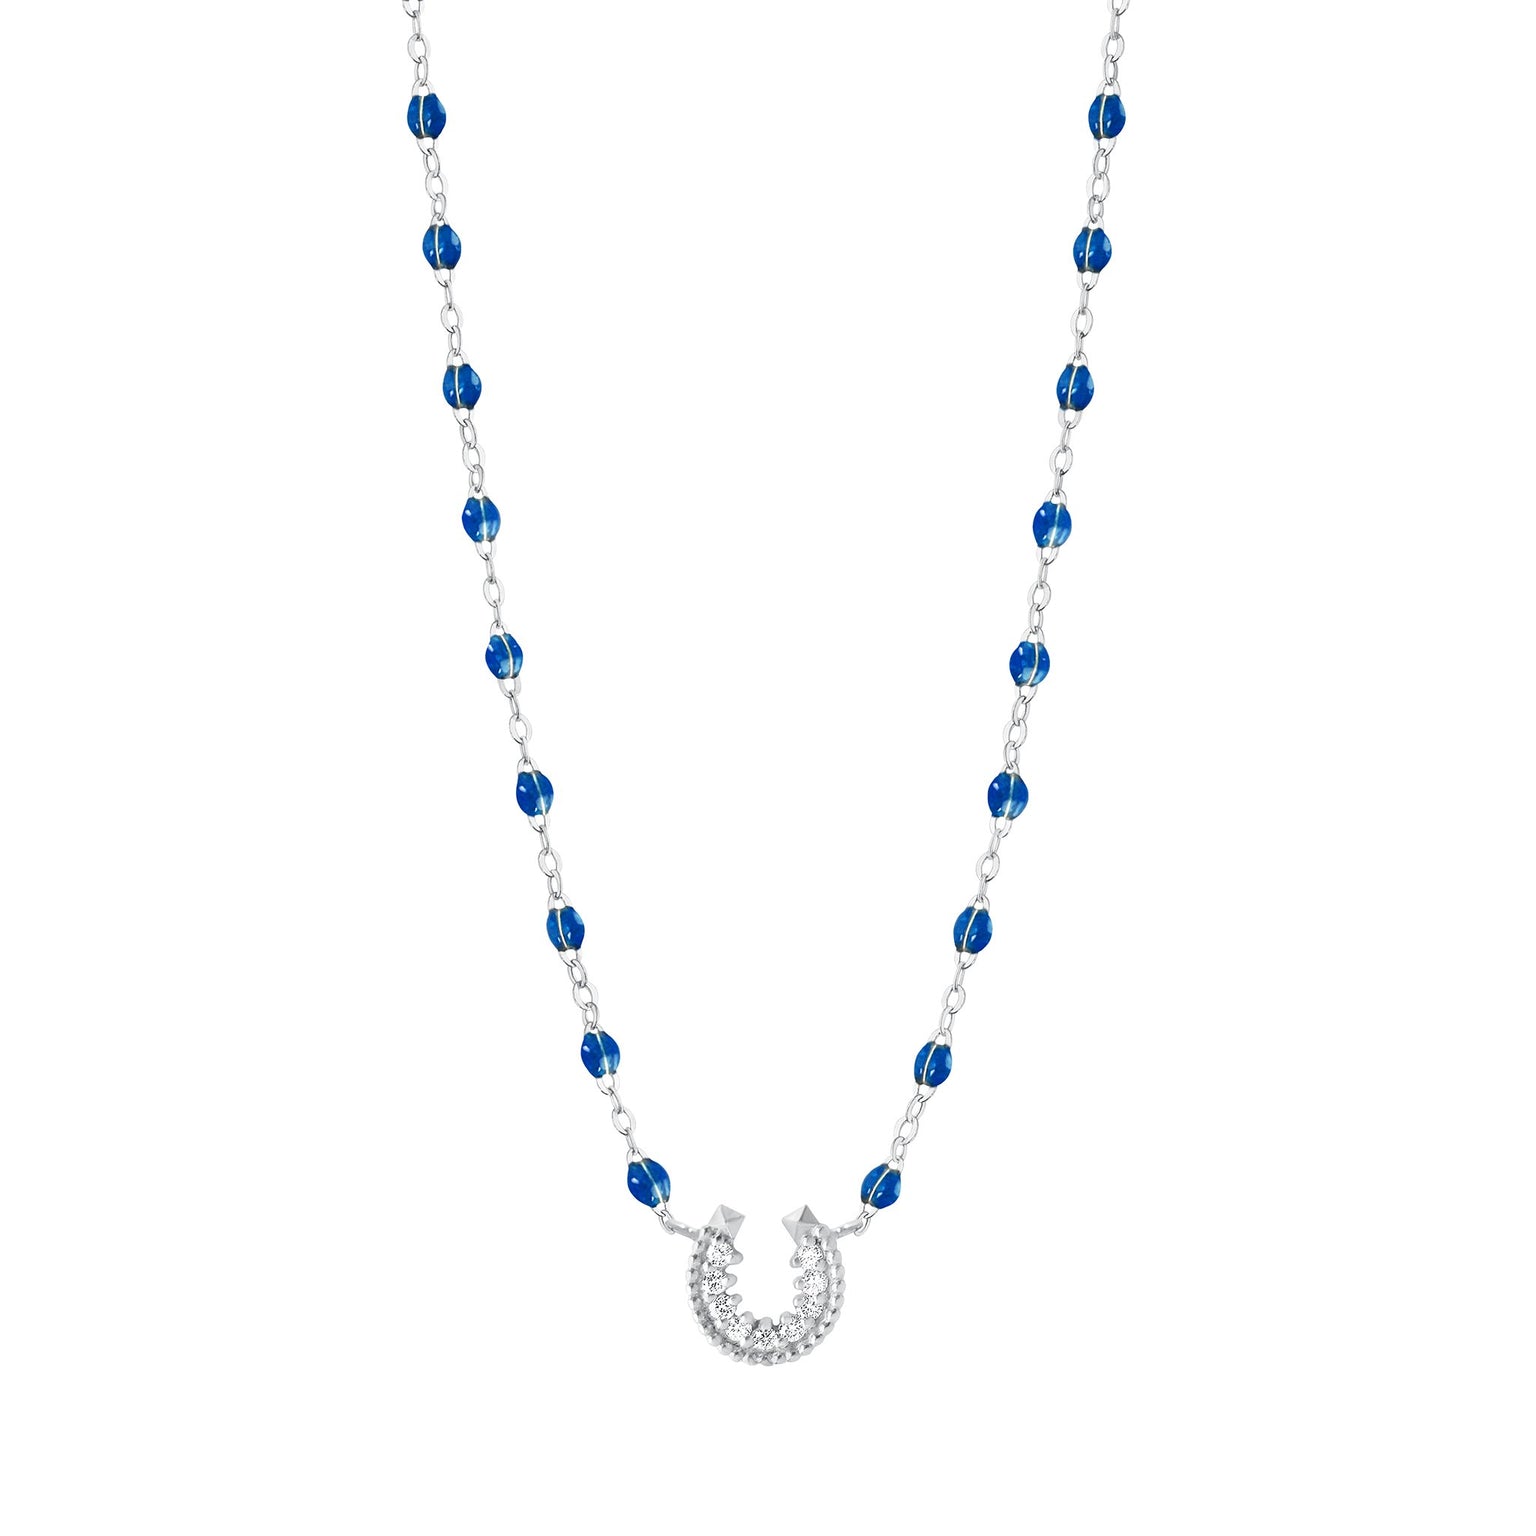 Shop Blue Sapphire Necklaces & Pendant